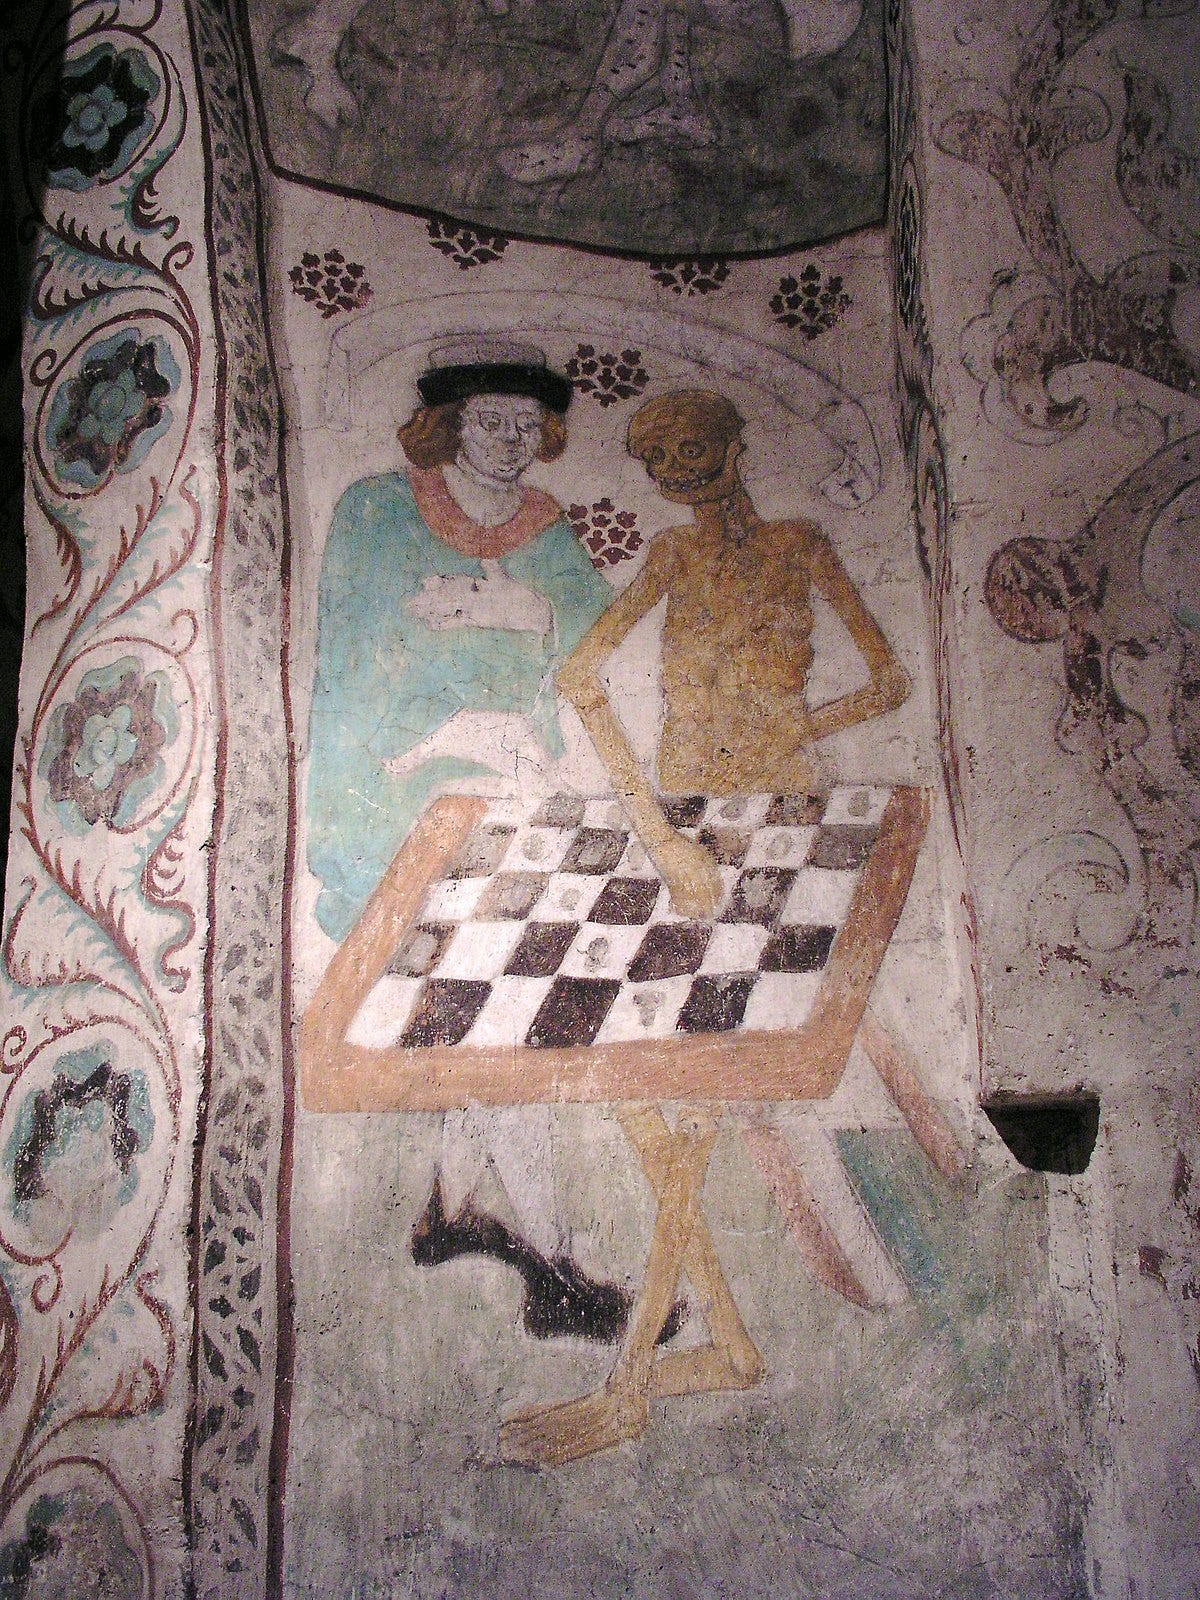 Death playing chess - Wikipedia